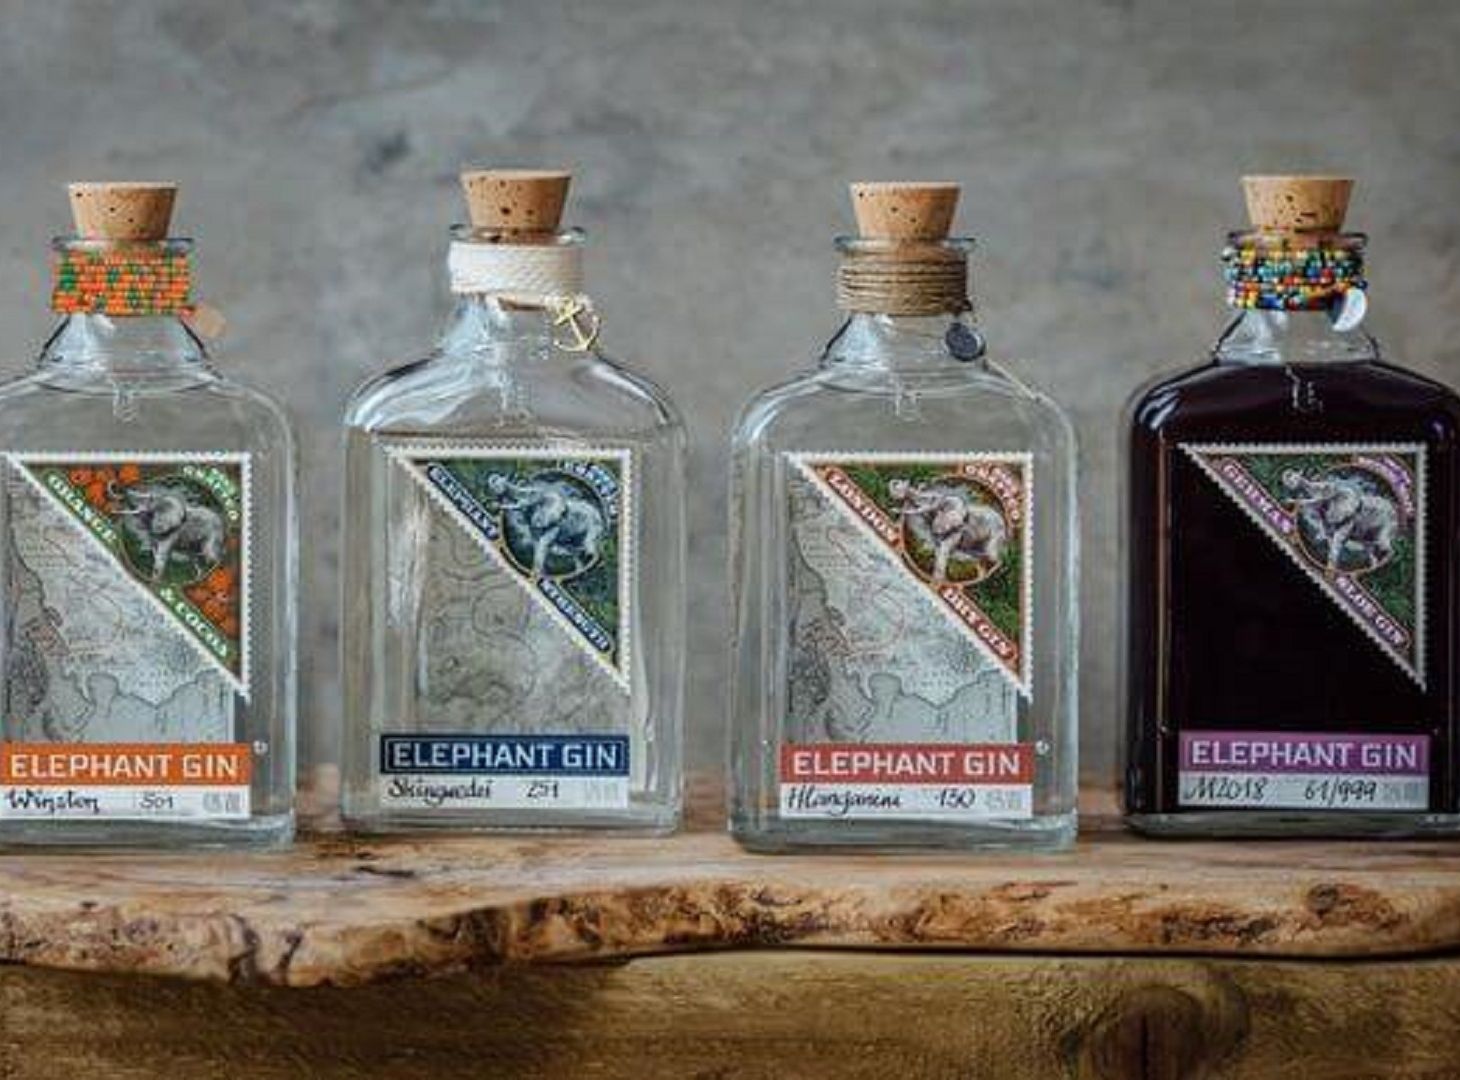 Image of Elephant Gin bottles